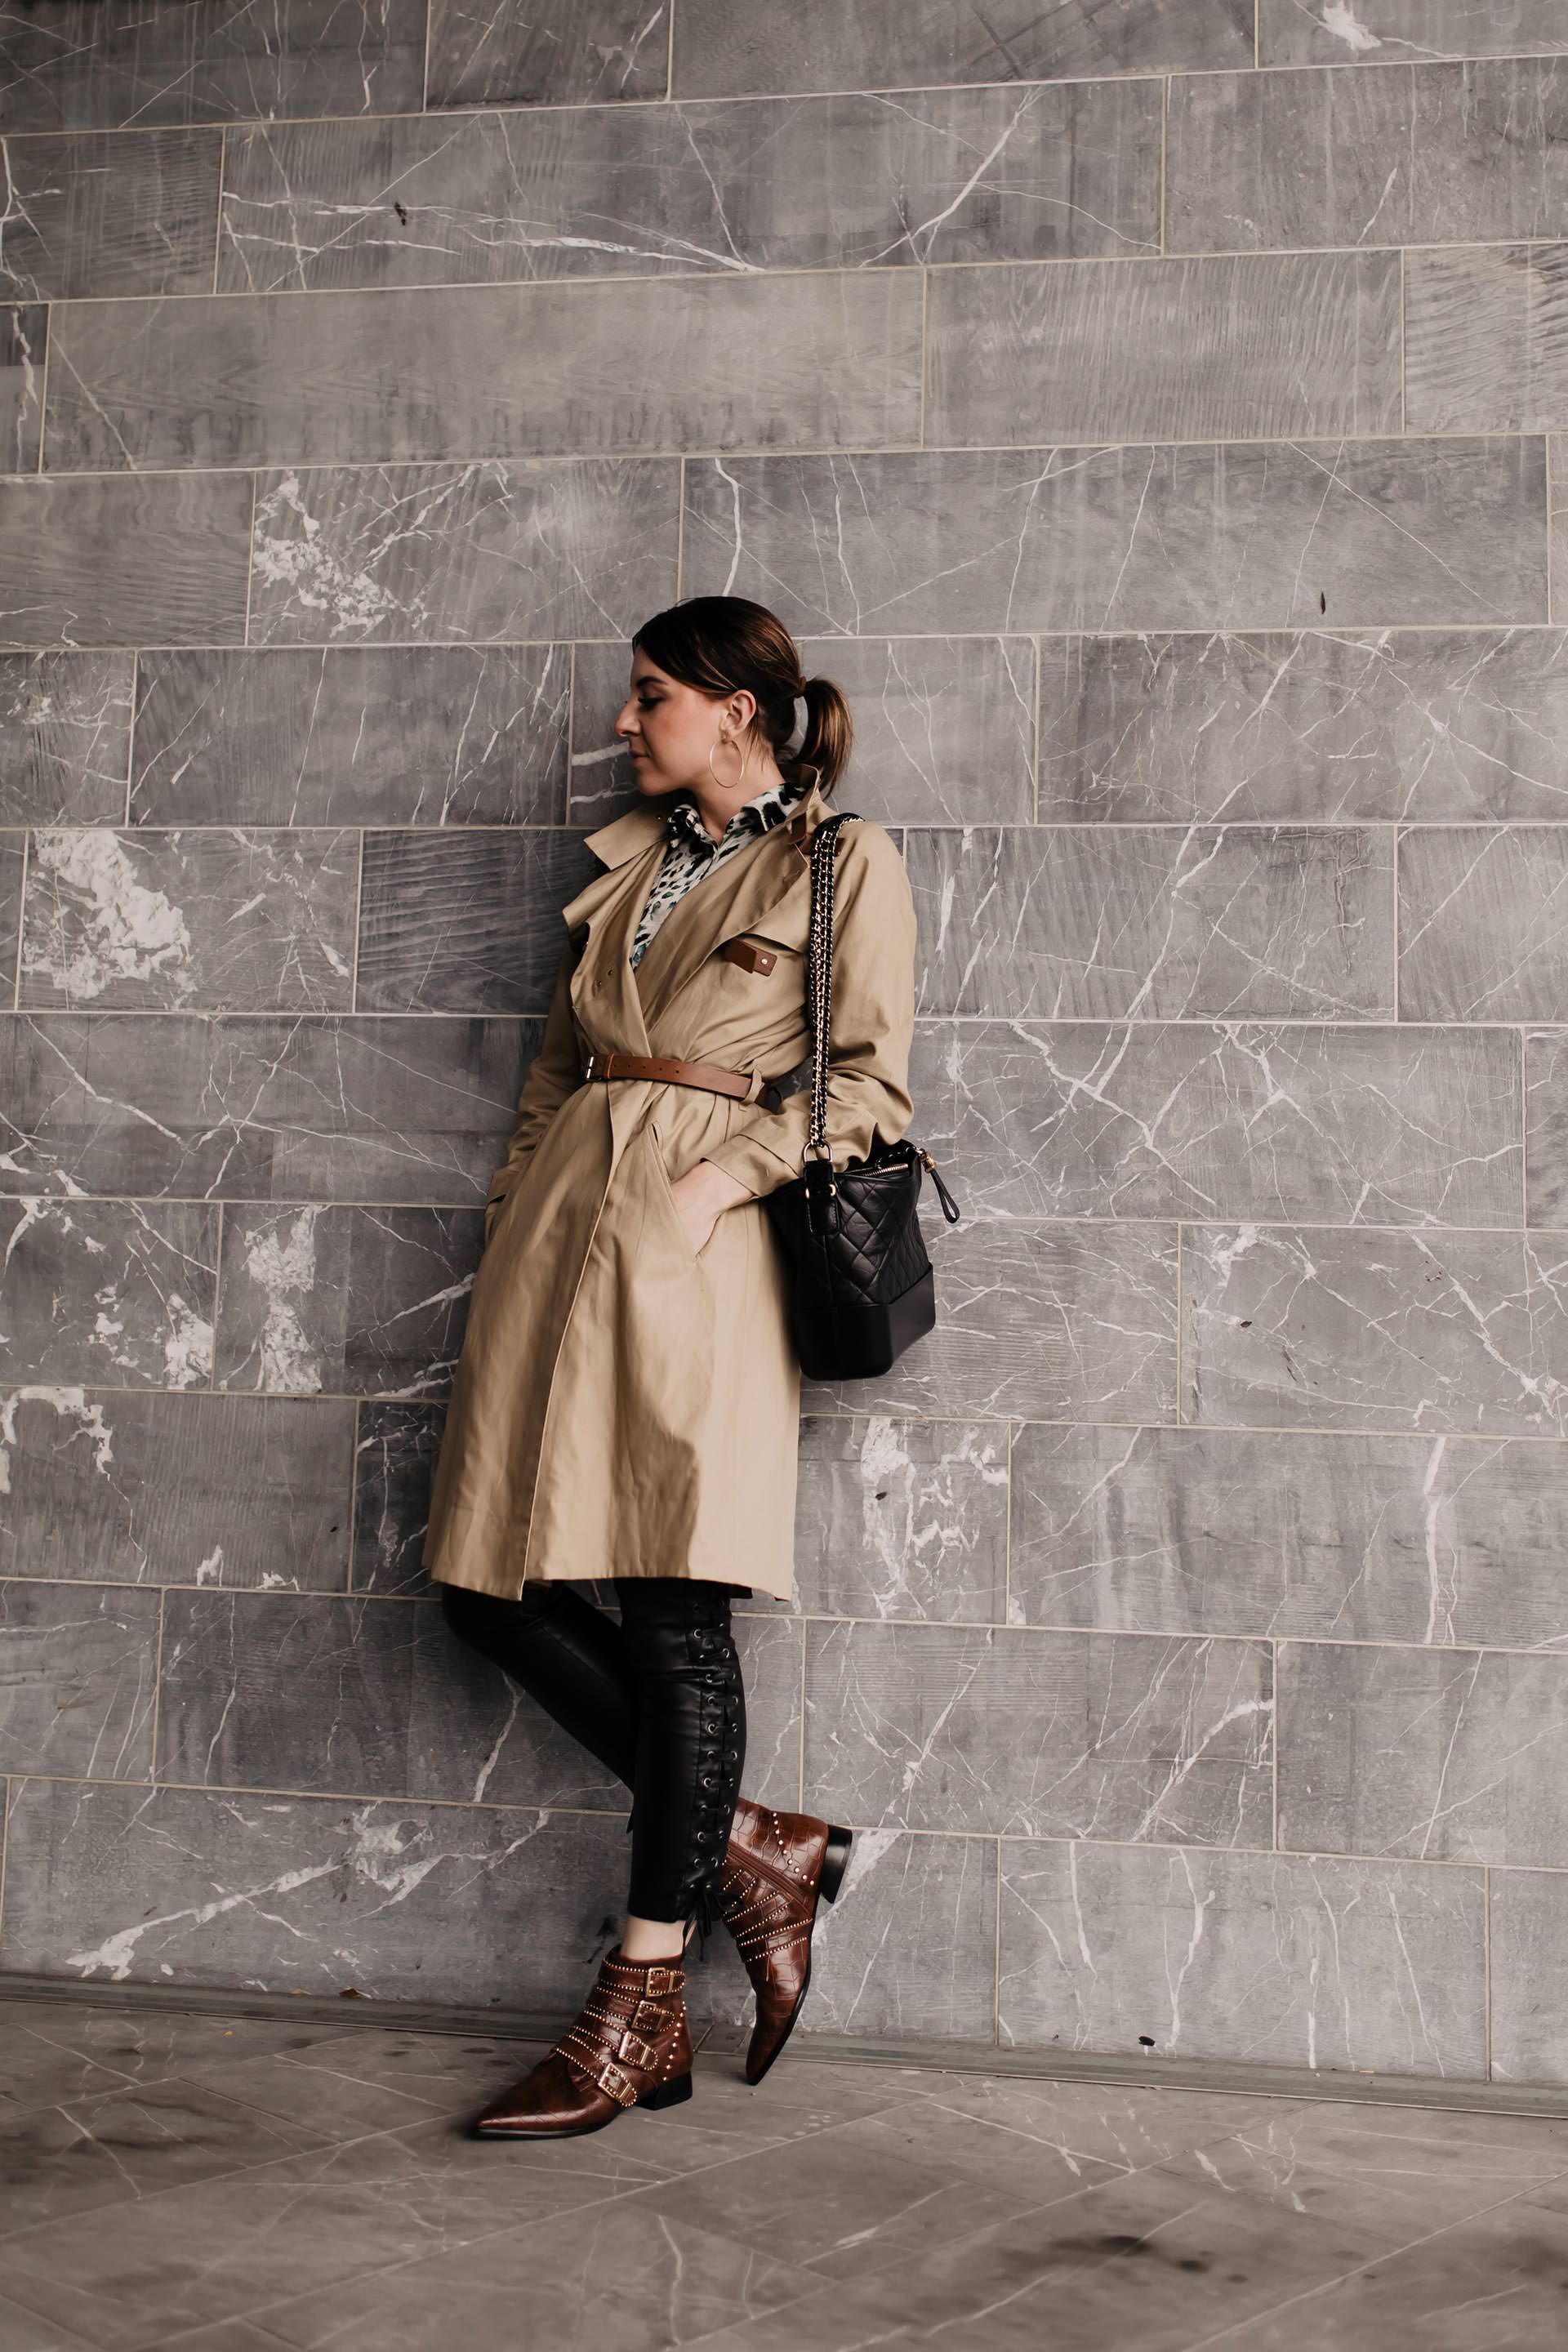 Produktplatzierung. Am Modeblog findest du heute ein Herbst Outfit mit Lederhose, Trenchcoat und Nieten-Boots. Wie immer mit allen Shopping-Details und Mode Tipps. Klick dich rein und ich zeige dir, wie gut man eine schwarze Lederhose kombinieren kann, wo du die perfekten Herbst Trenchcoats kaufen kannst und wo es die braunen Nieten-Boots gibt! www.whoismocca.com #herbstoutfit #lederhose #modetrends #trenchcoat